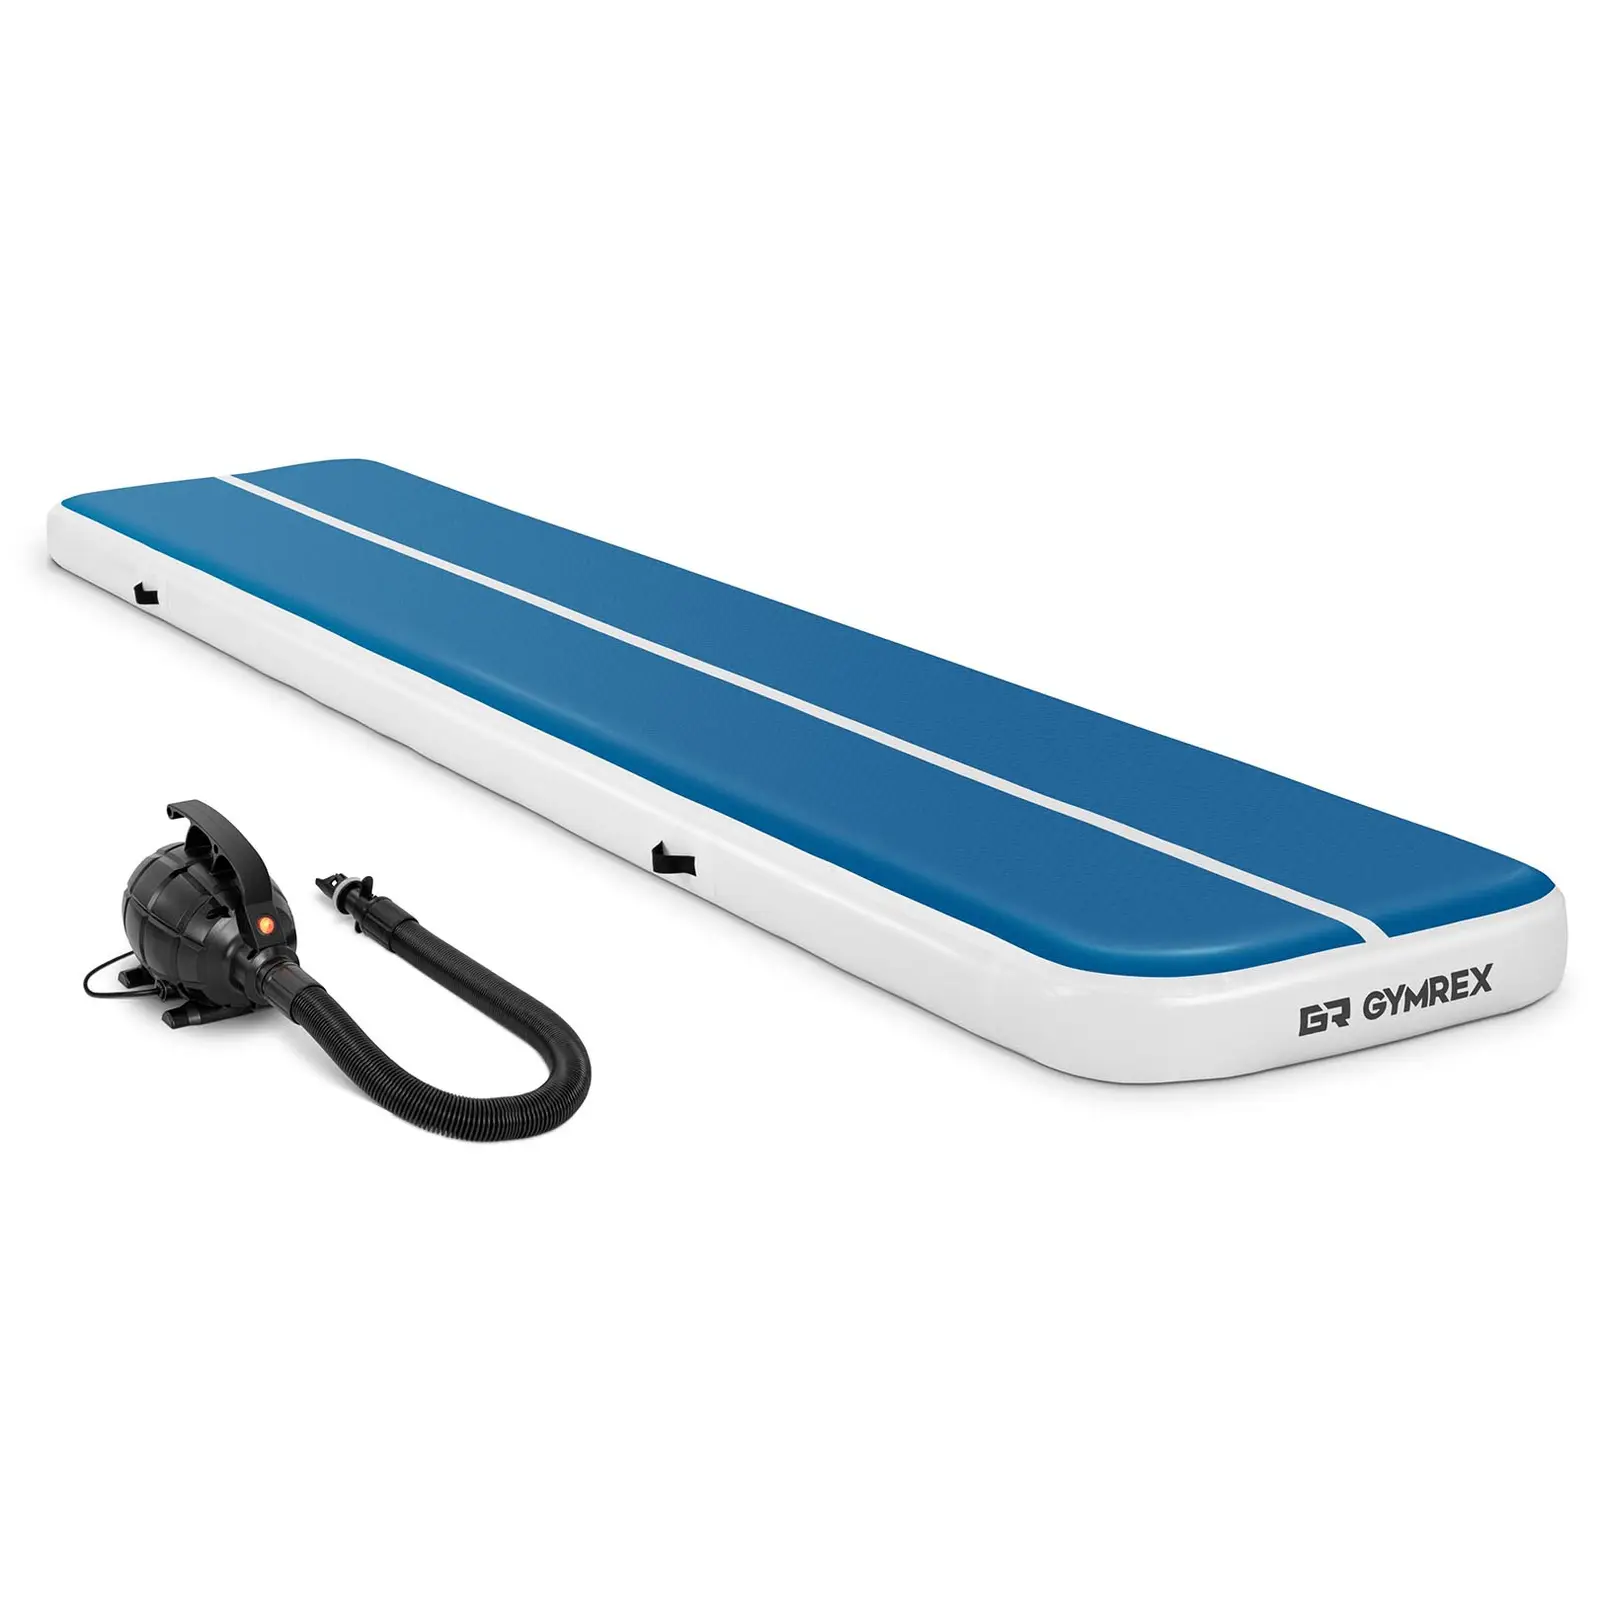 Sett: Oppblåsbar treningsmatte med elektrisk pumpe - 500 x 100 x 20 cm - 250 kg - blå/hvit